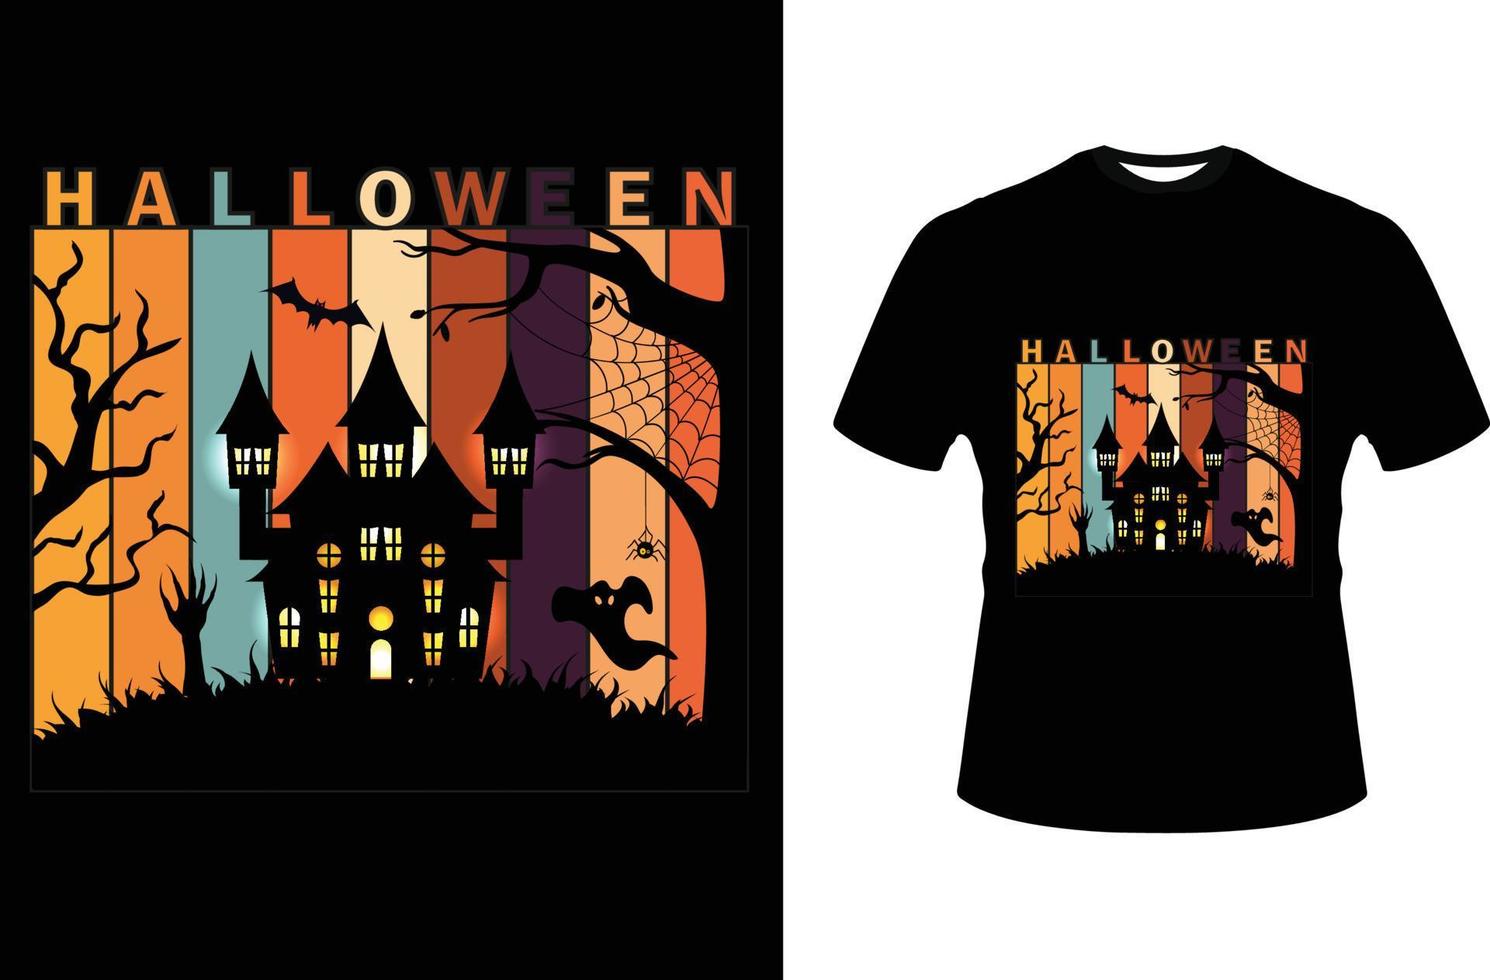 Halloween trendy graphics t-shirt design vector